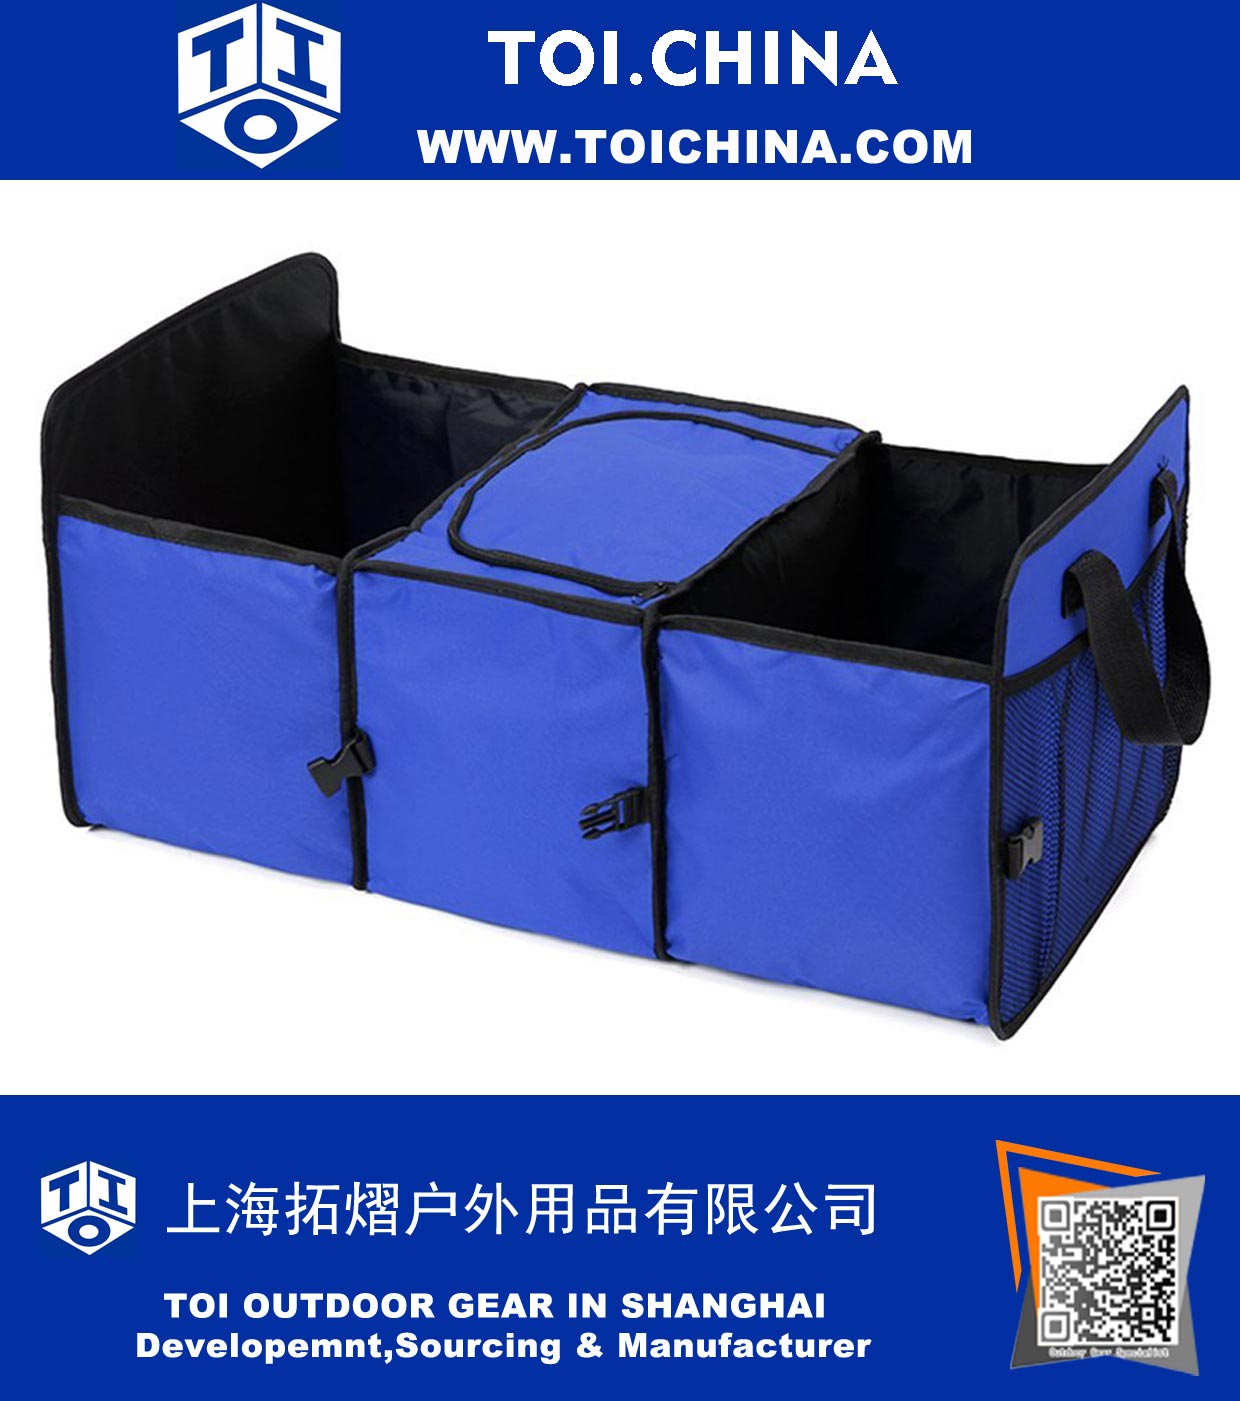 Oxford-Gewebe-Fahrzeug-angebrachter mit einschließender Kasten, zusammenklappbarer Kofferraum-Organisator mit 3 Fächern, Selbstspeicher-Verpackungskarton mit einer Kühltasche, blaue Farbe